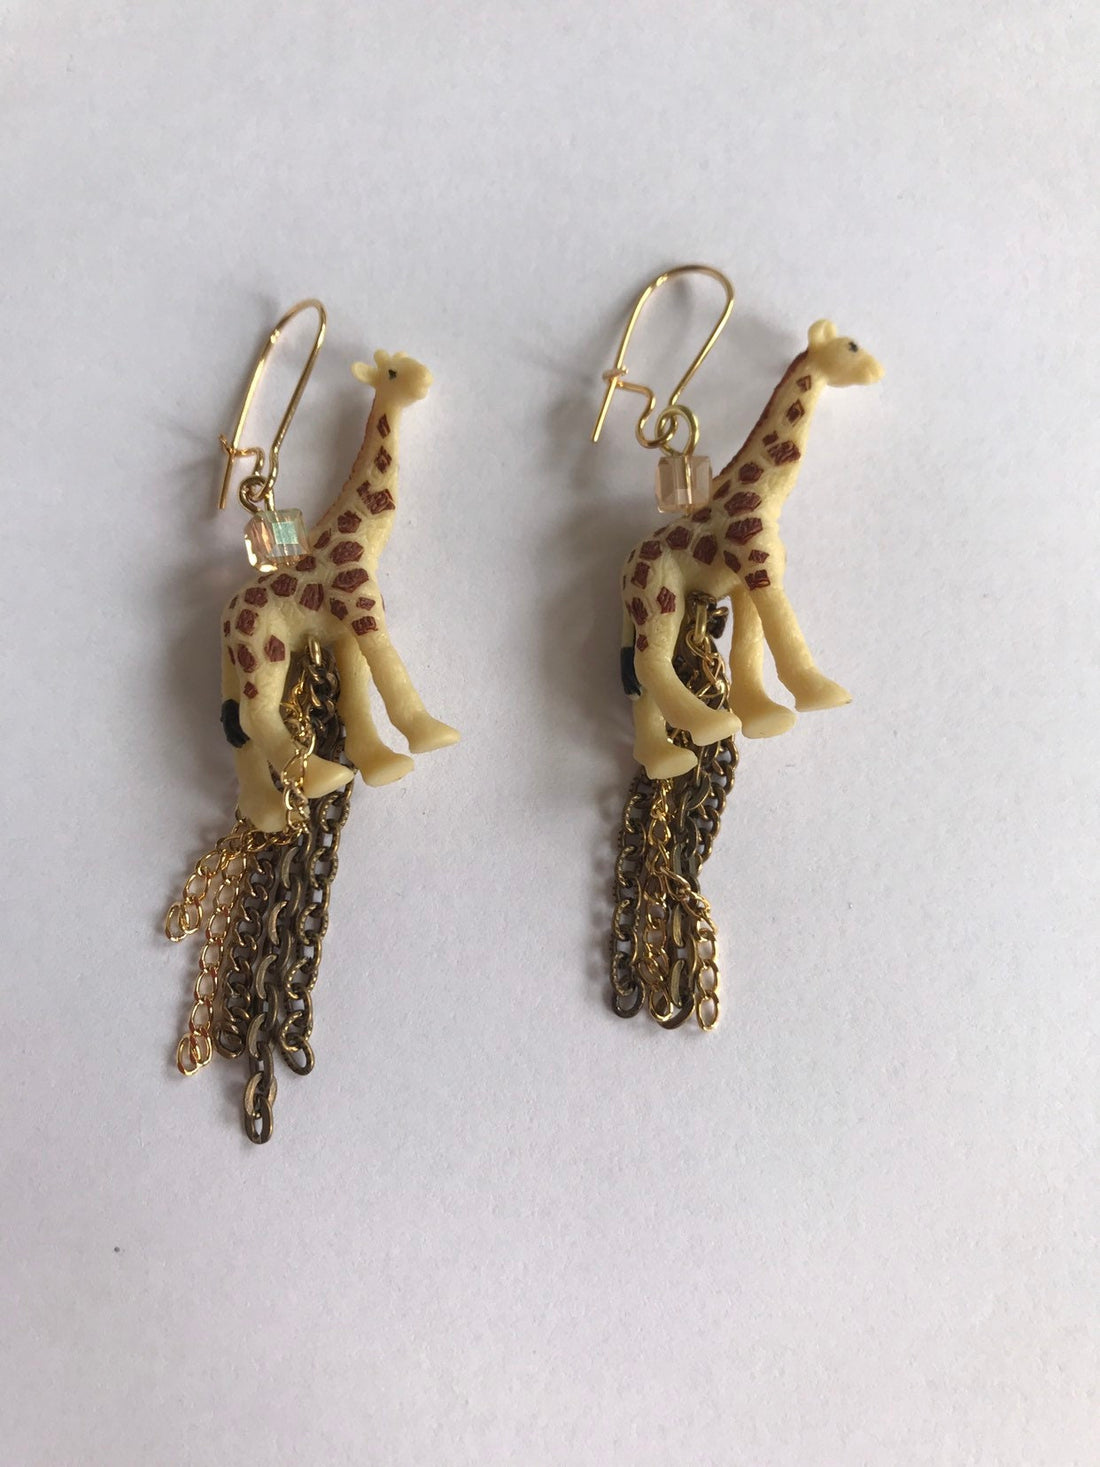 Lenora Dame Mini Giraffe Chain Tassel Earrings